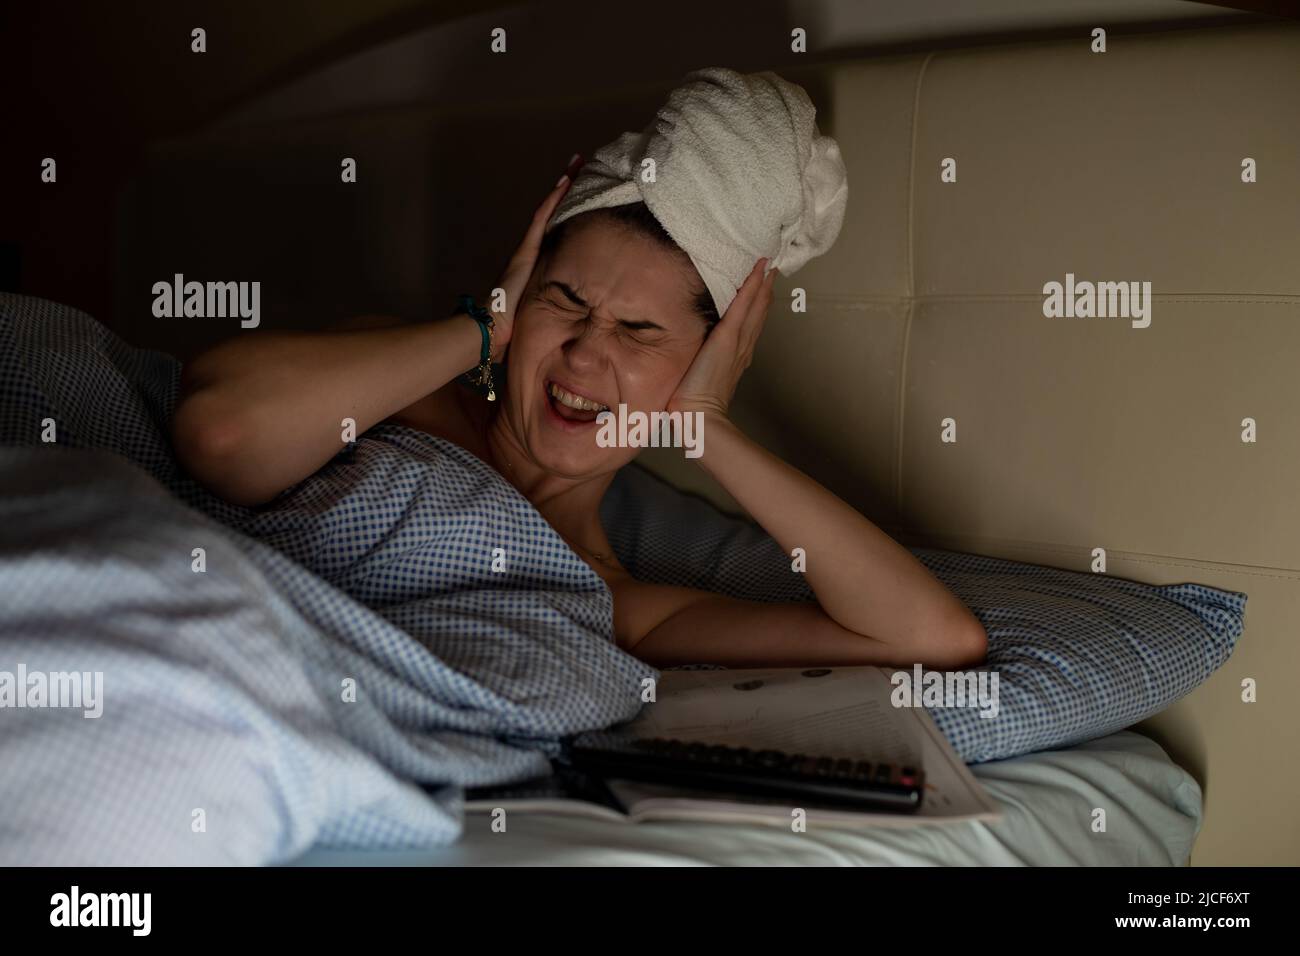 Mujer joven con toalla blanca envuelta alrededor de la cabeza tumbada en cama que sufre de dolor de cabeza, dolor de oído que cubre los oídos con las manos. Foto de stock